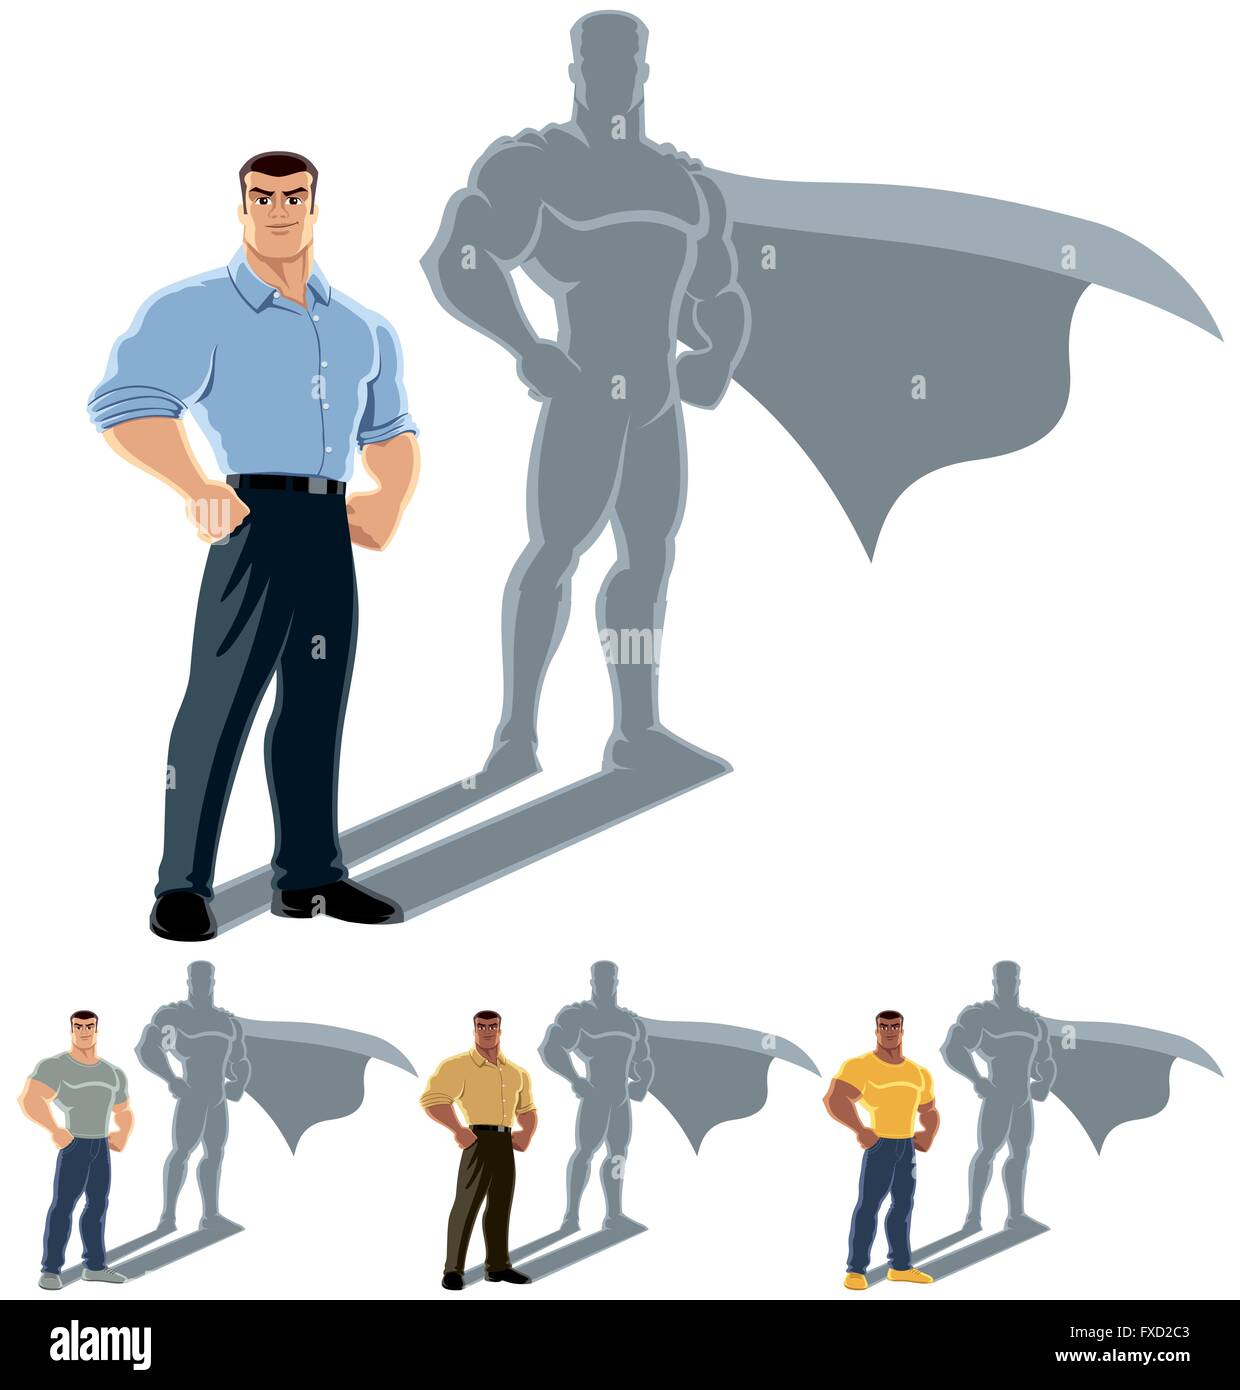 Illustration conceptuelle de l'homme ordinaire à l'ombre du super-héros. L'illustration est en 4 versions. Pas de transparence et des dégradés Illustration de Vecteur